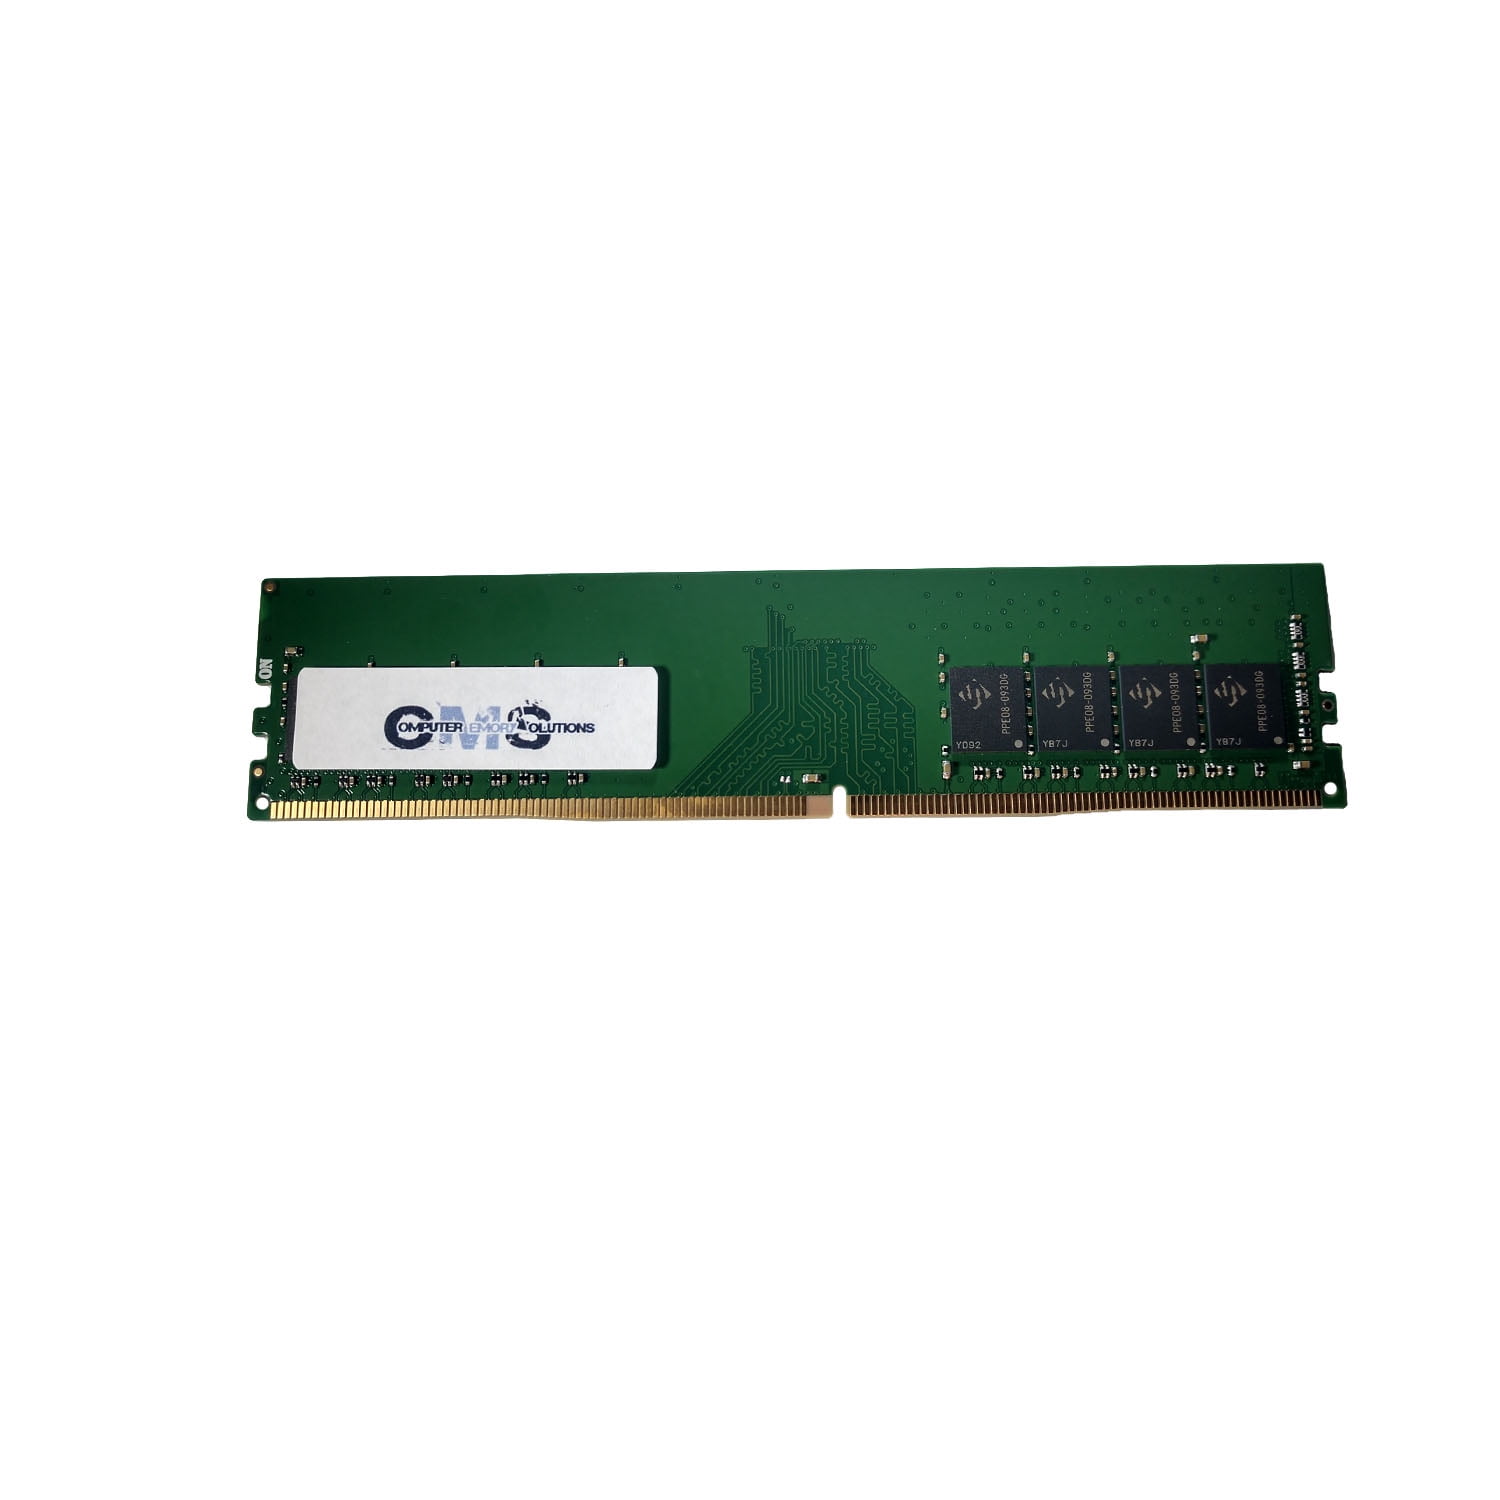 Herre venlig bilag Ekstraordinær CMS 8GB (1X8GB) DDR4 19200 2400MHZ NON ECC DIMM Memory Ram Upgrade  Compatible with Asus/Asmobile® Z170 PRO Gaming, Z170-A, Z170-AR, Z170-DELUXE,  Z170-E, Z170-K Motherboards - C111 - Walmart.com